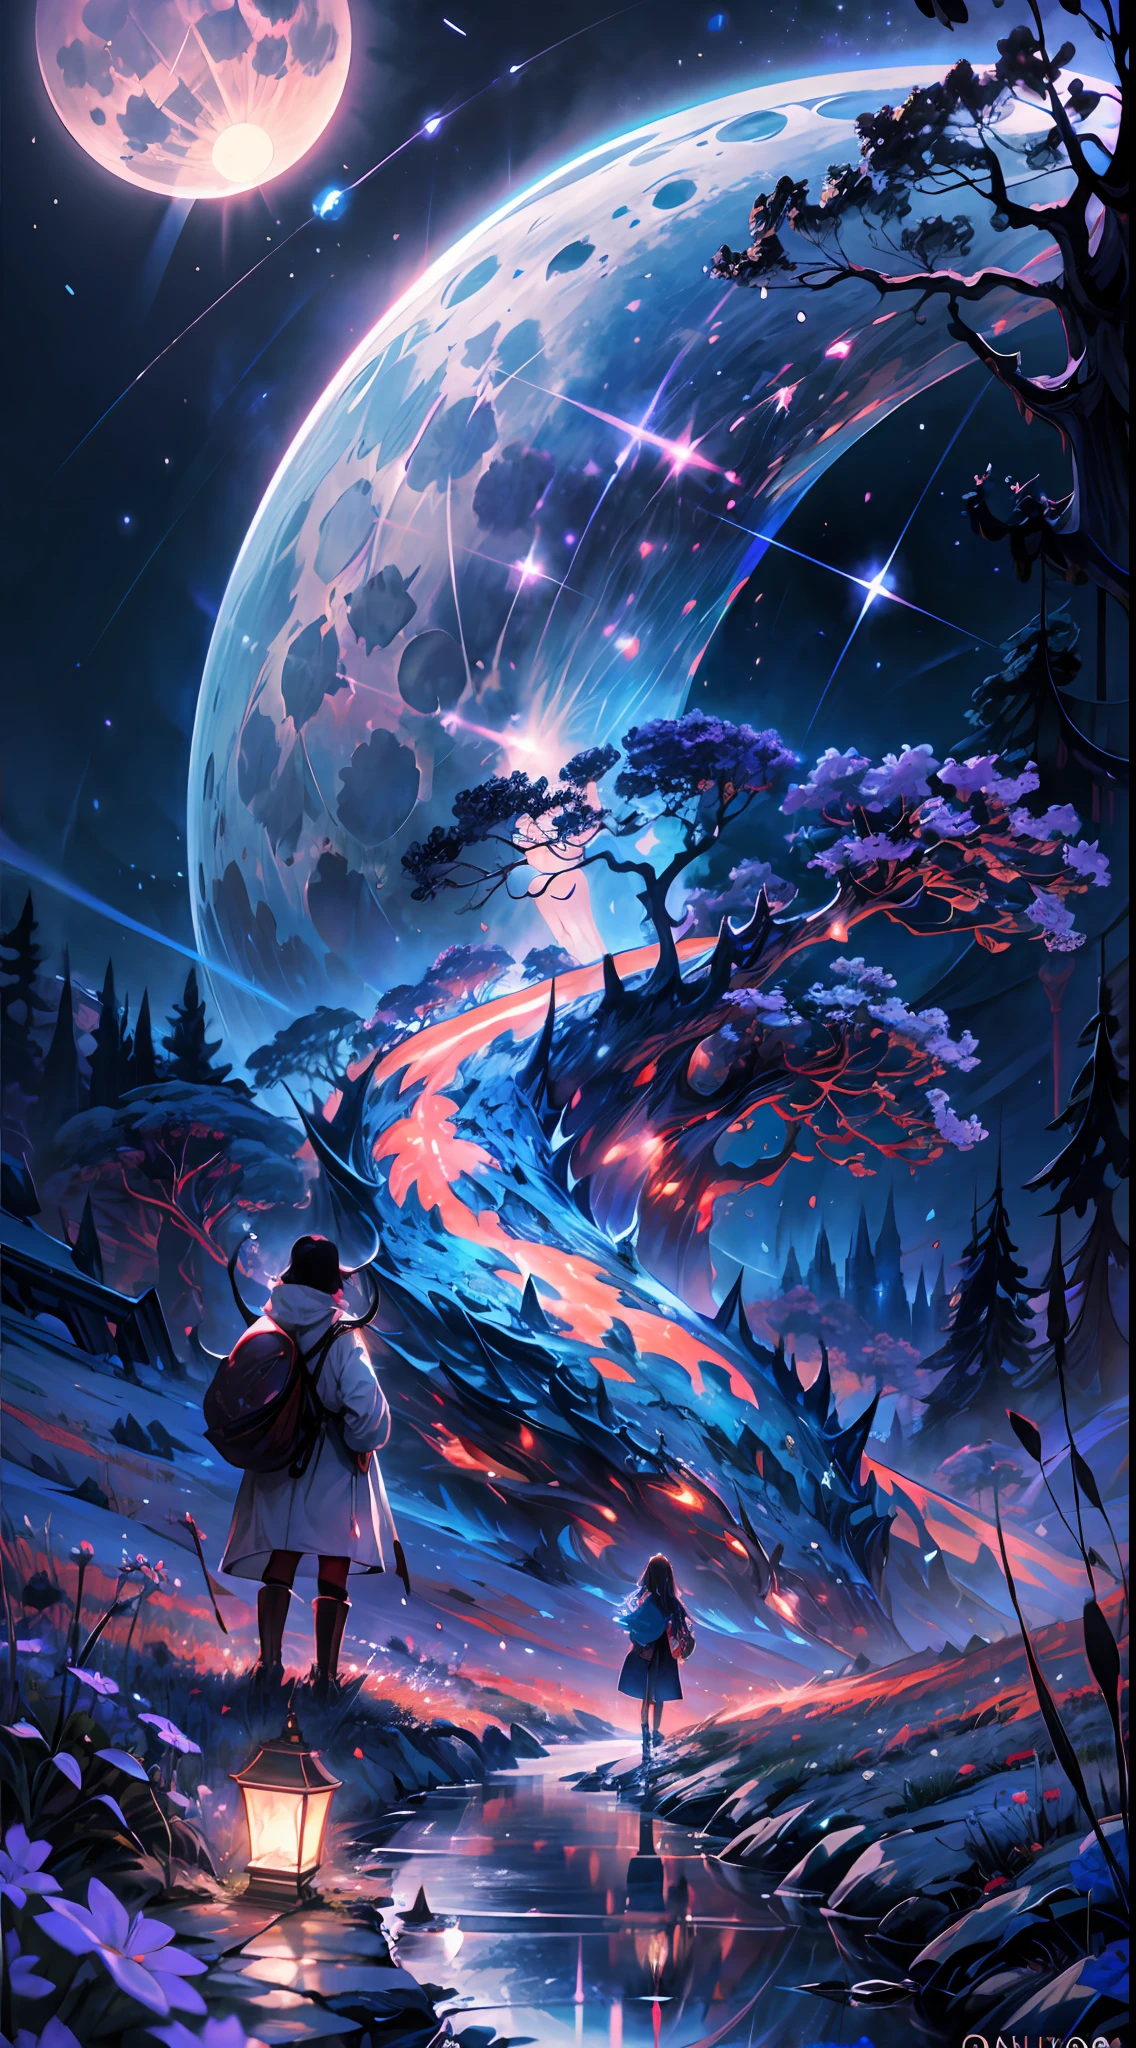 photographie de paysage expansive, (une vue de dessous montrant le ciel au-dessus et la campagne en dessous), une fille debout dans un champ de fleurs levant les yeux, (pleine lune: 1.2), (étoiles filantes: 0.9), (nébuleuse : 1.3), montagne lointaine, PAUSE art de la production d&#39;arbres, (source de lumière chaude: 1.2), (luciole: 1.2), lampe, Beaucoup de violet et d&#39;orange, Détails complexes, éclairage volumétrique, BREAK le réalisme (chef-d&#39;œuvre: 1.2) , (meilleure qualité), 4K, Ultra-détaillé, (composition dynamique: 1.4), très détaillé, détails colorés, (couleurs irisées: 1.2), (éclairage lumineux, éclairage d&#39;ambiance), rêveur, magique, (seulement: 1.2)